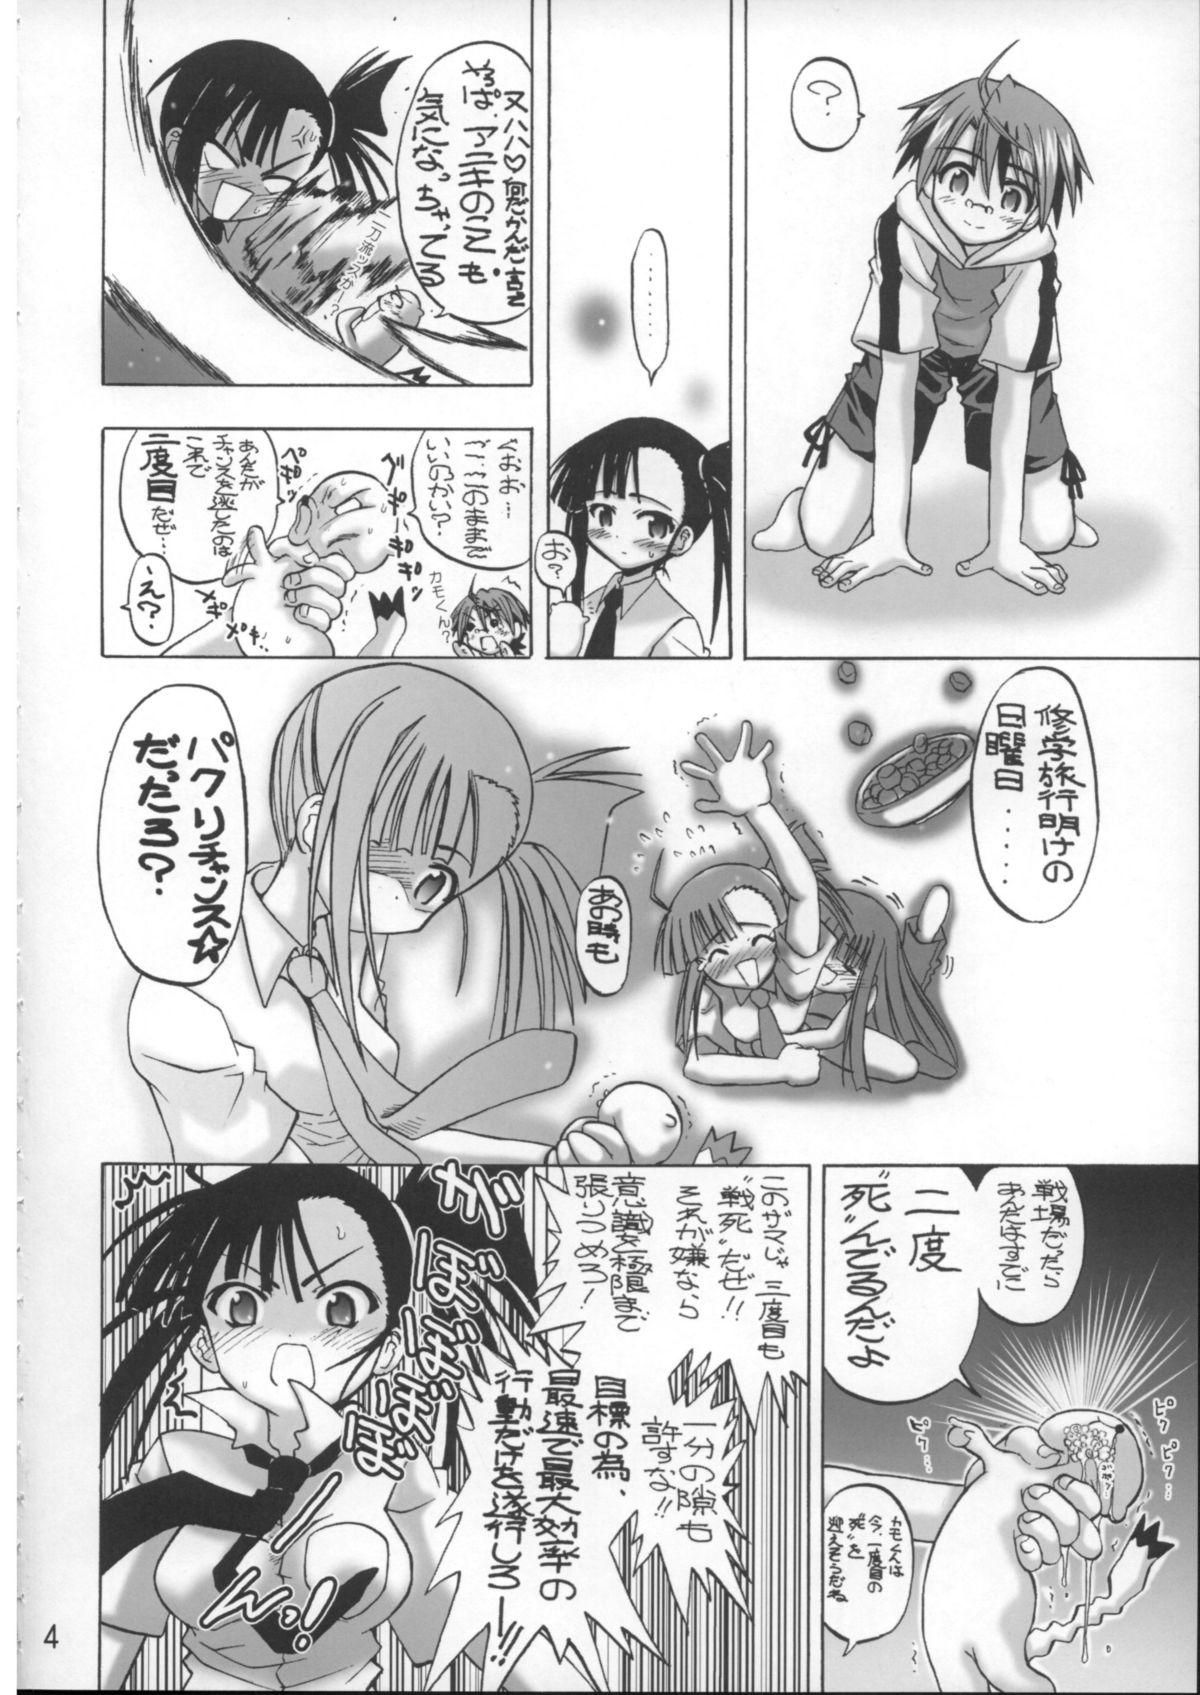 Milfporn Se-Chan toshiyouyo! - Mahou sensei negima White Girl - Page 3